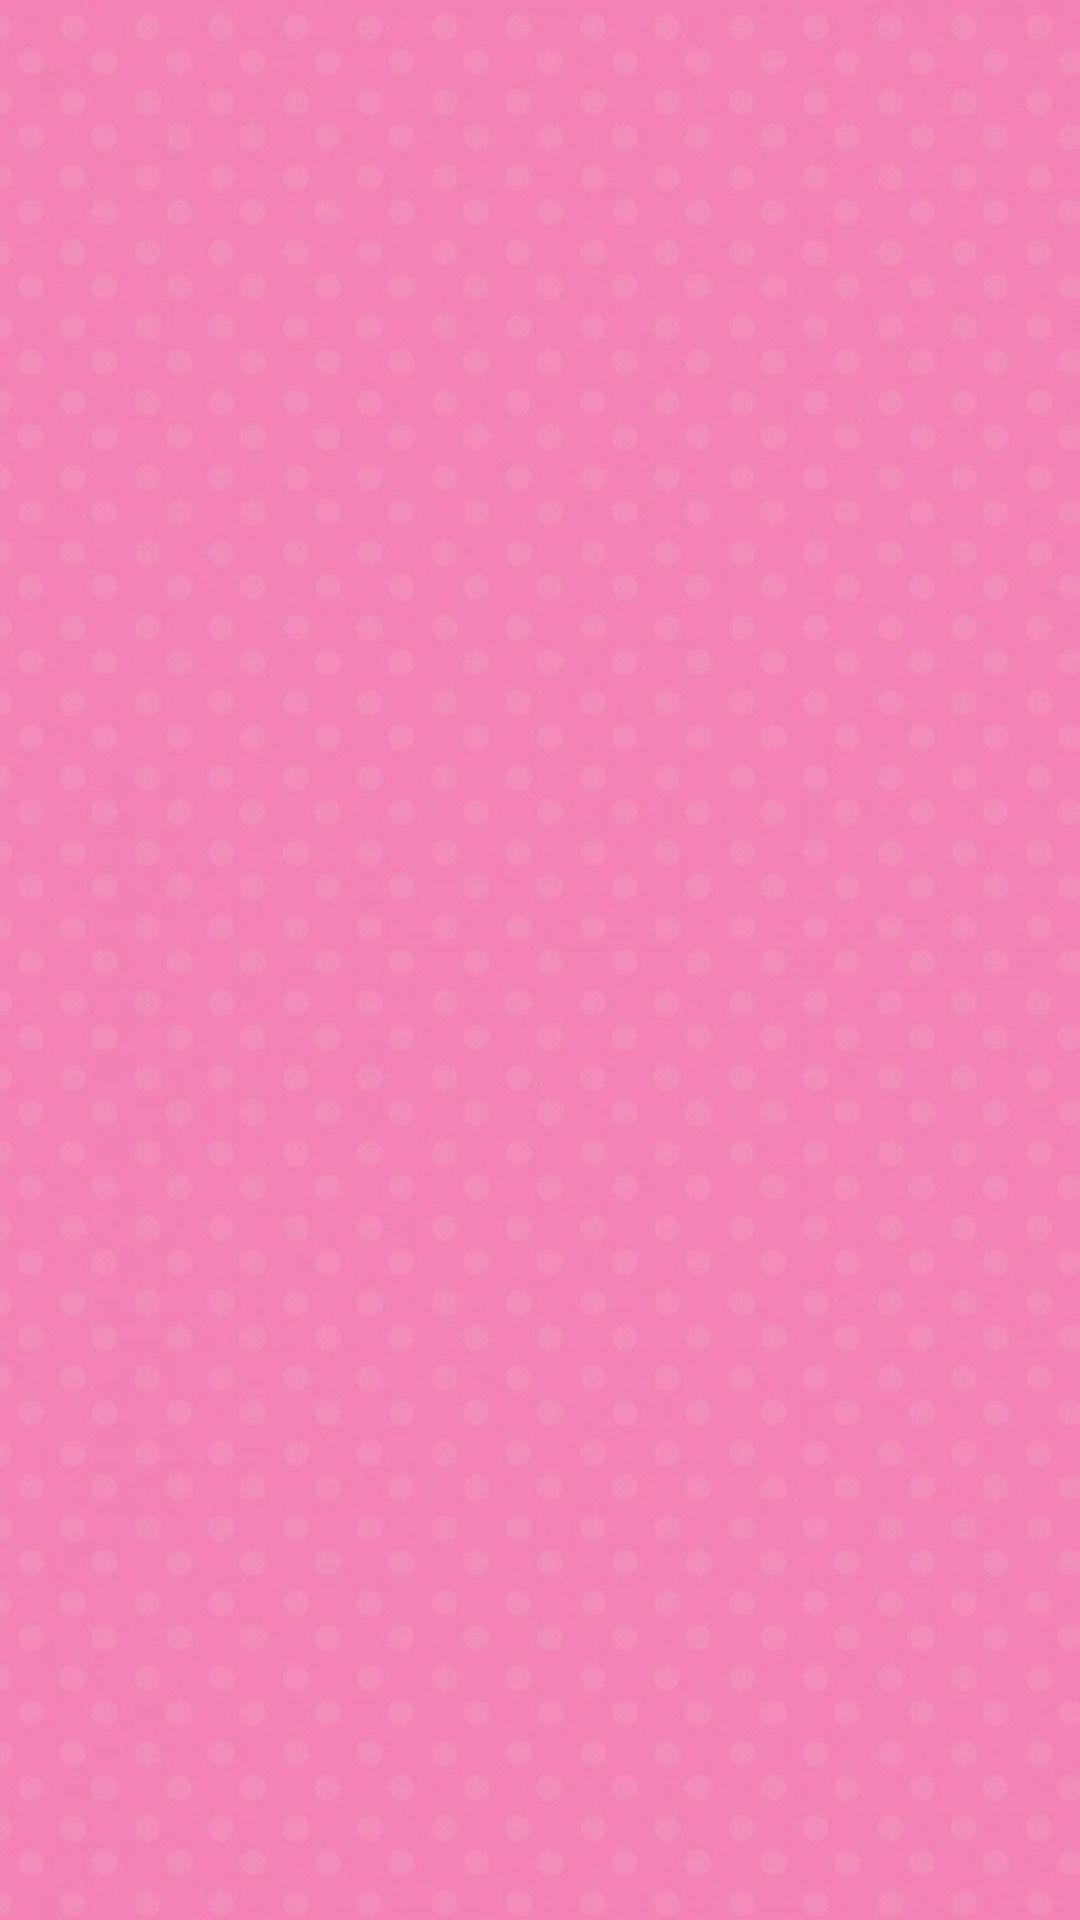 Cute pink LG G2 Wallpaper, LG G2 Wallpaper, LG Wallpaper